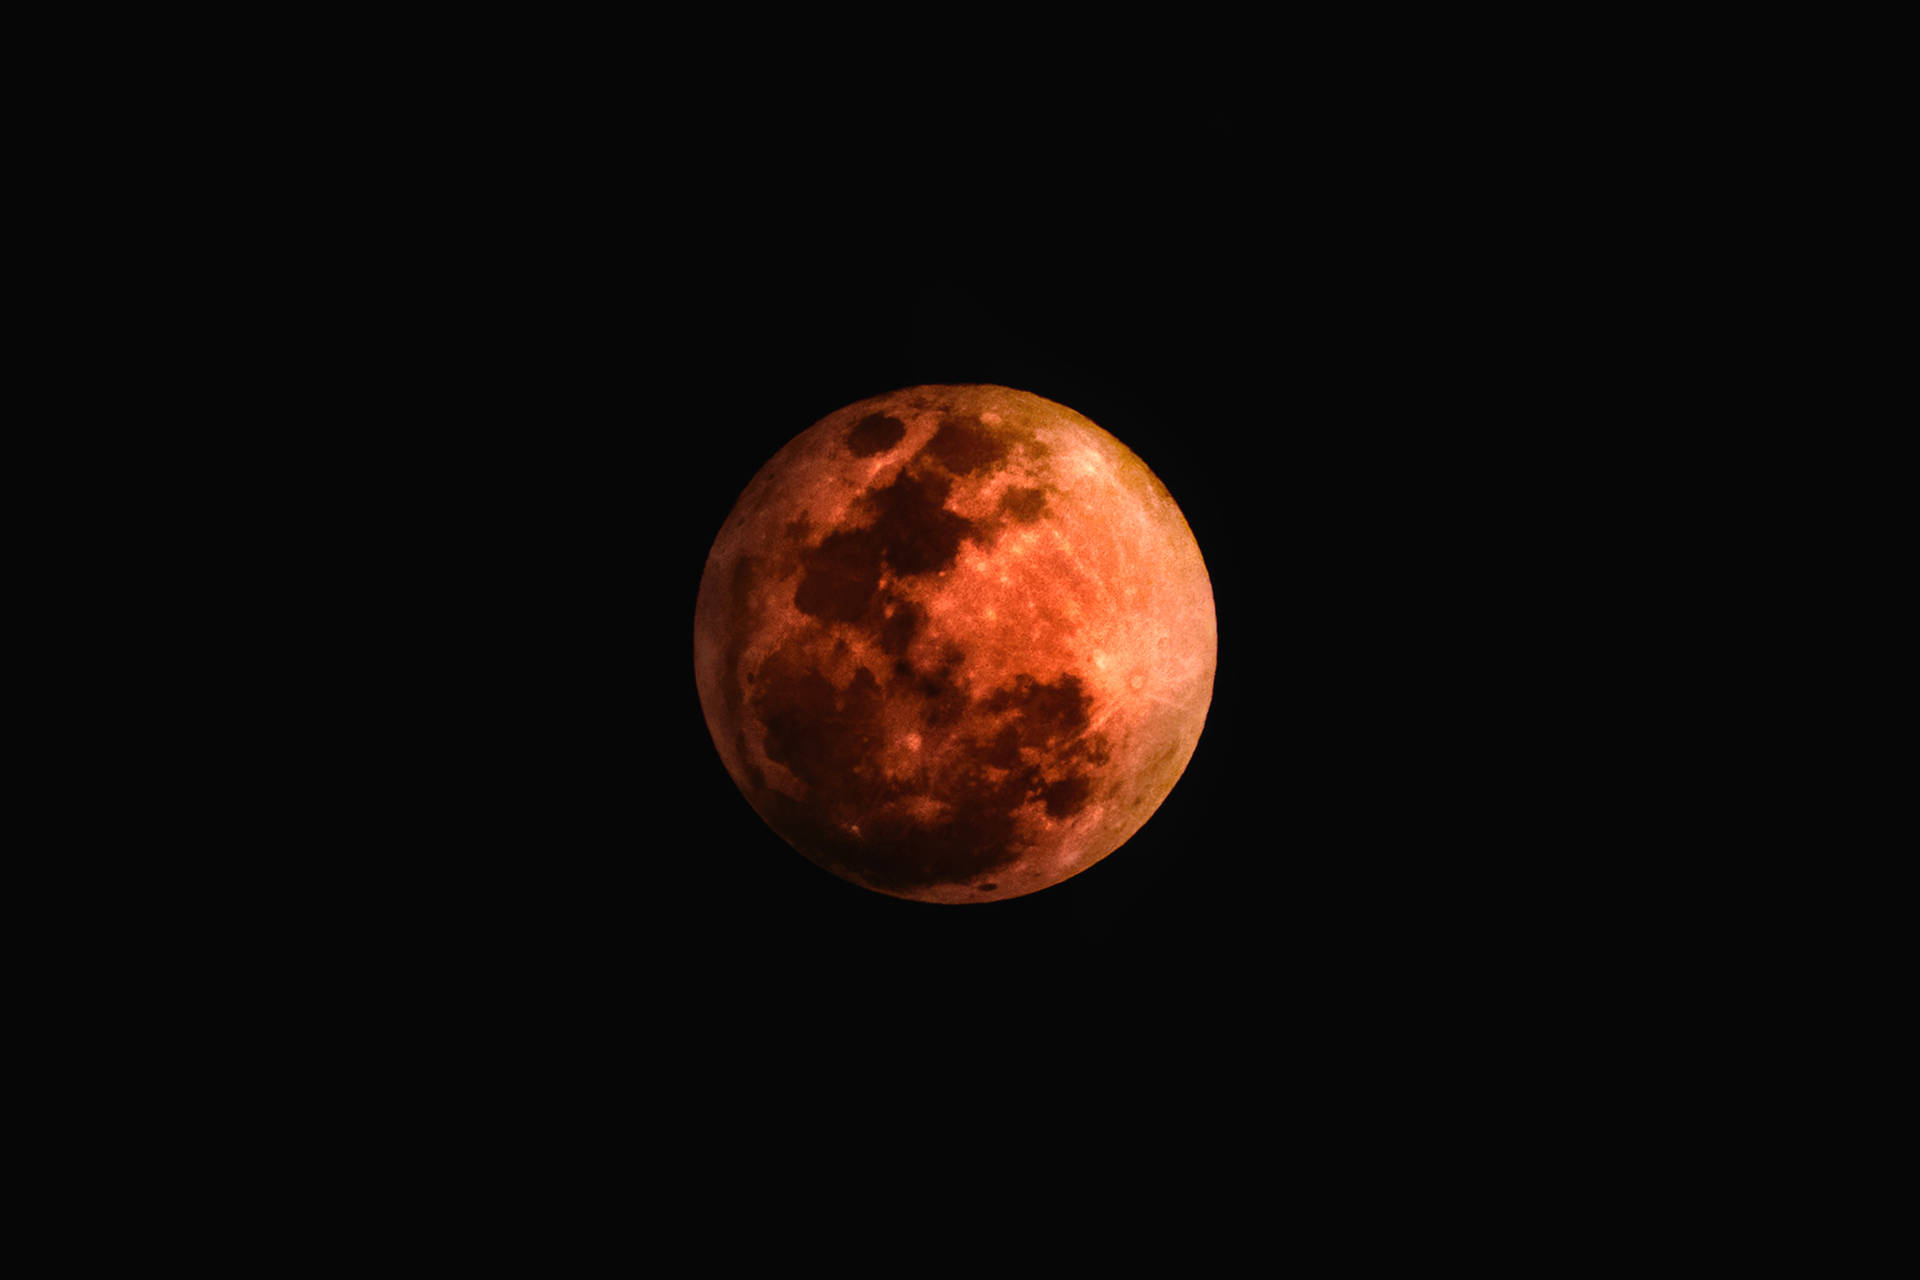 Dark Halloween Red Moon Background